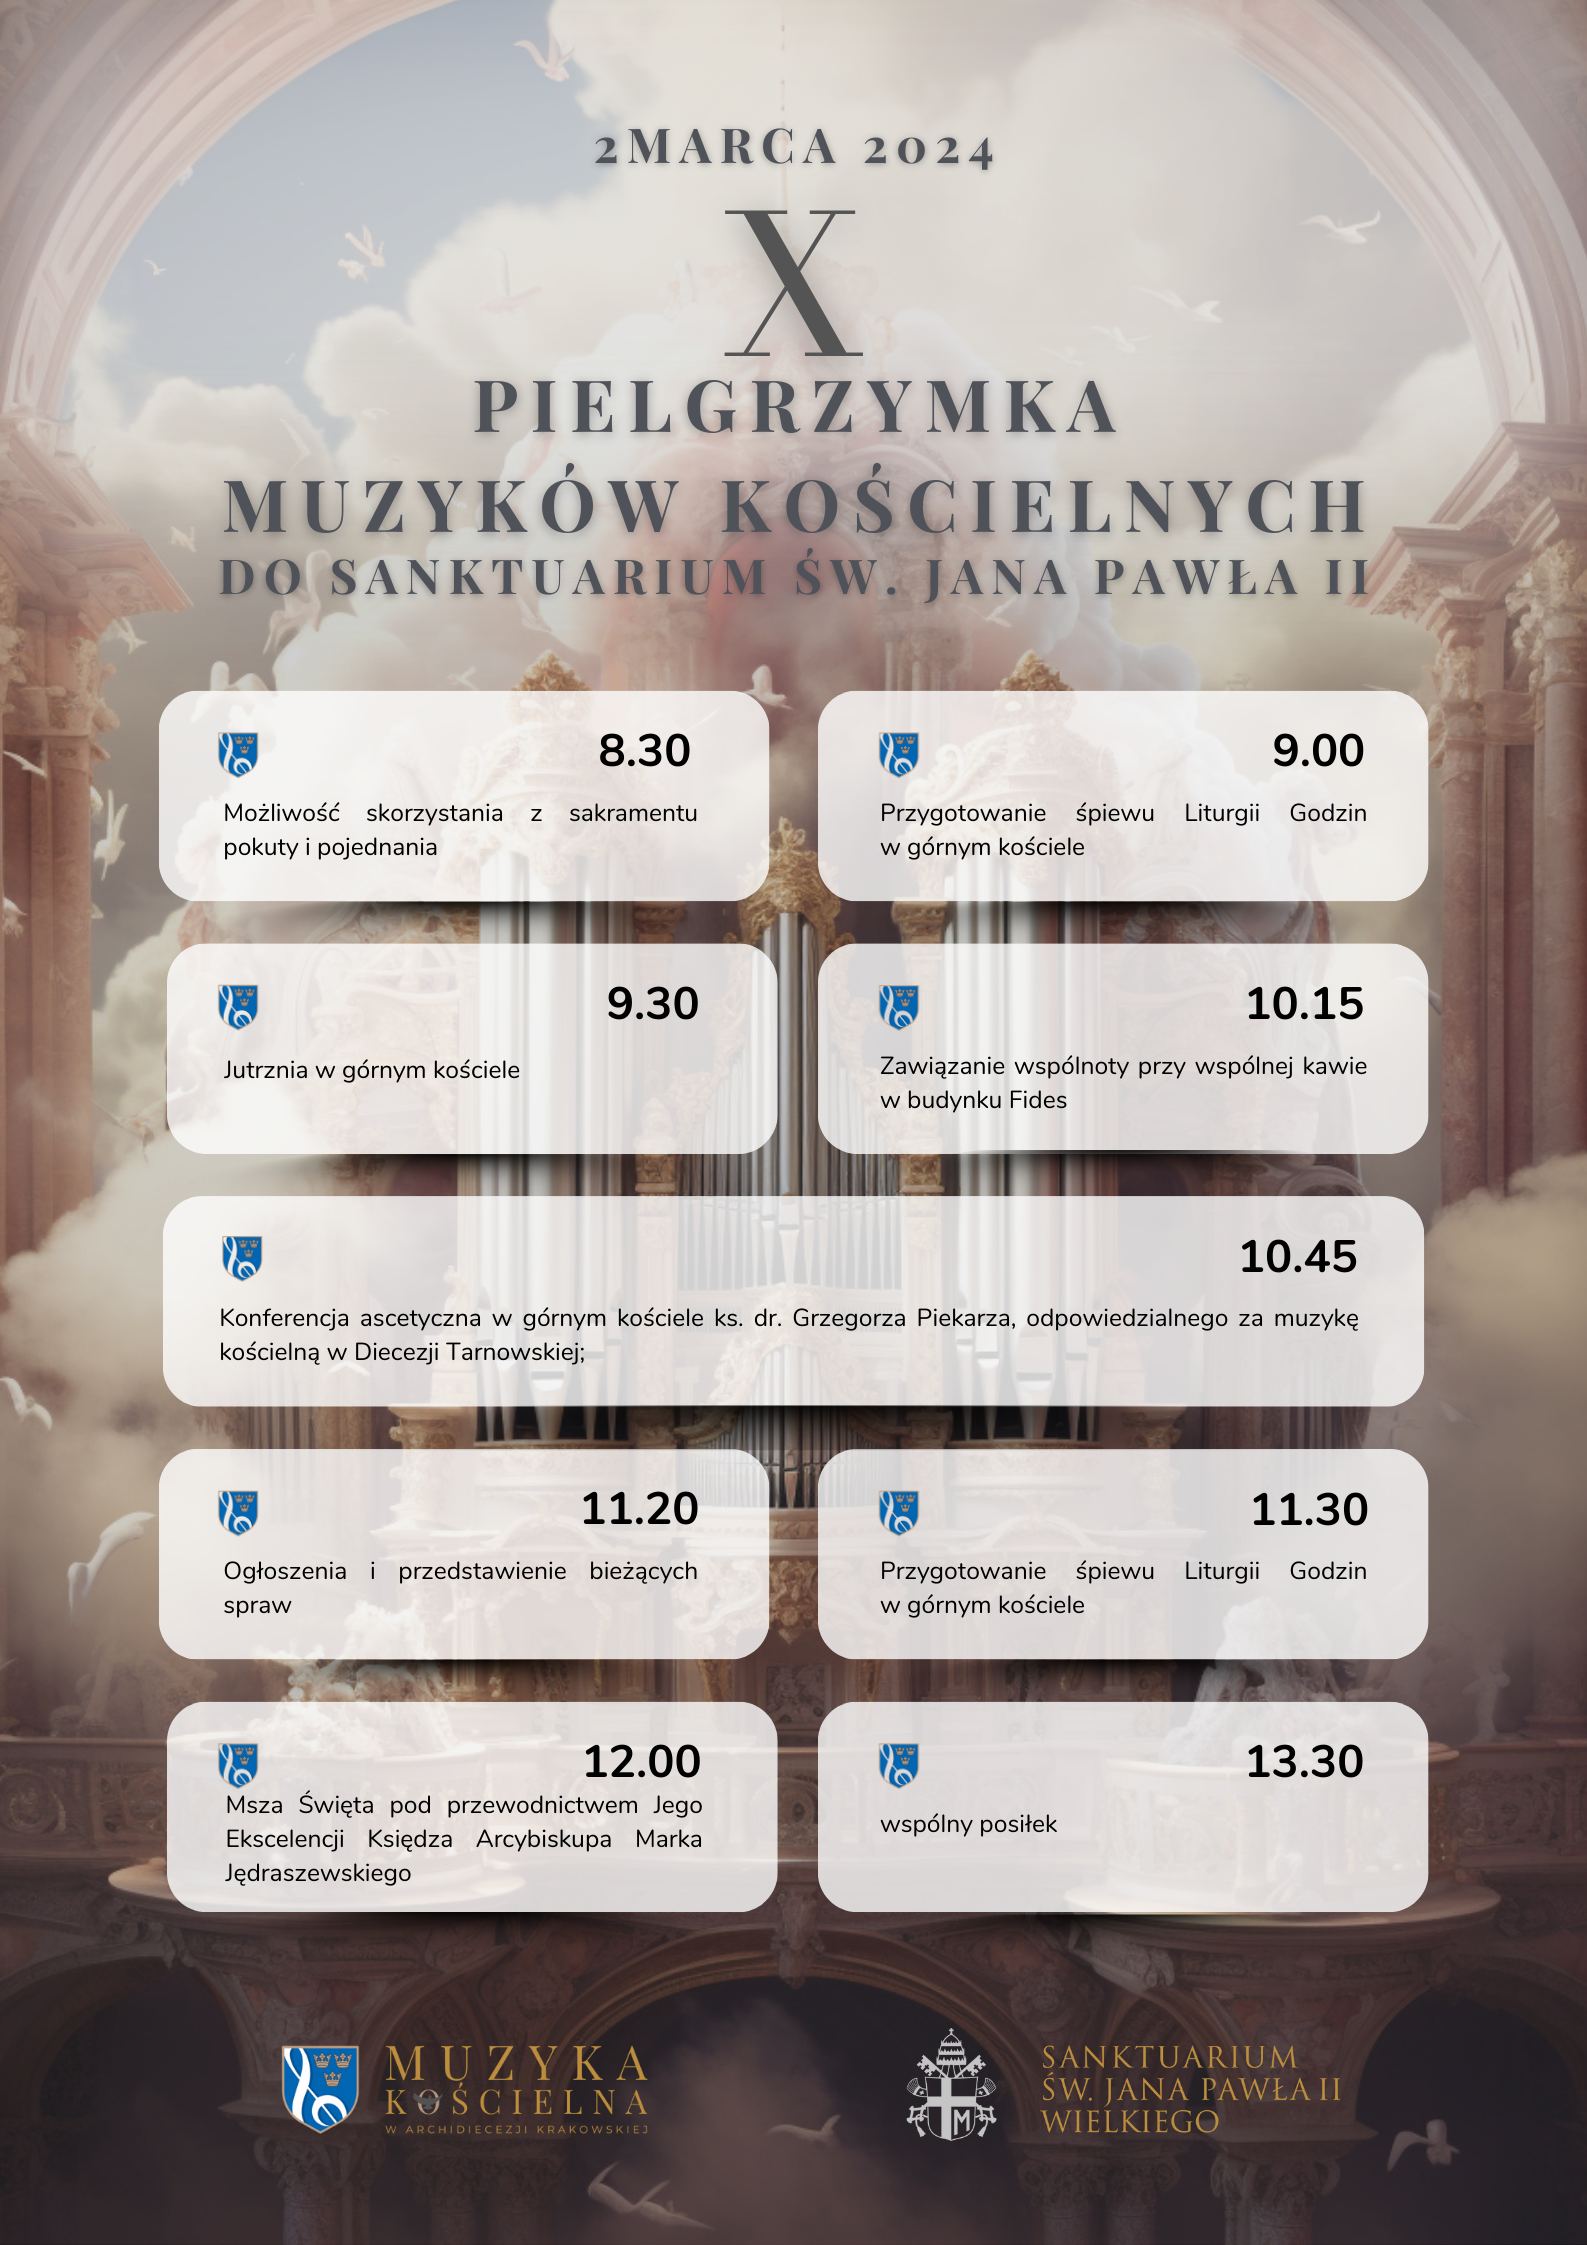 X Pielgrzymka Muzyków Kościelnych do Sanktuarium św. Jana Pawła II w Krakowie